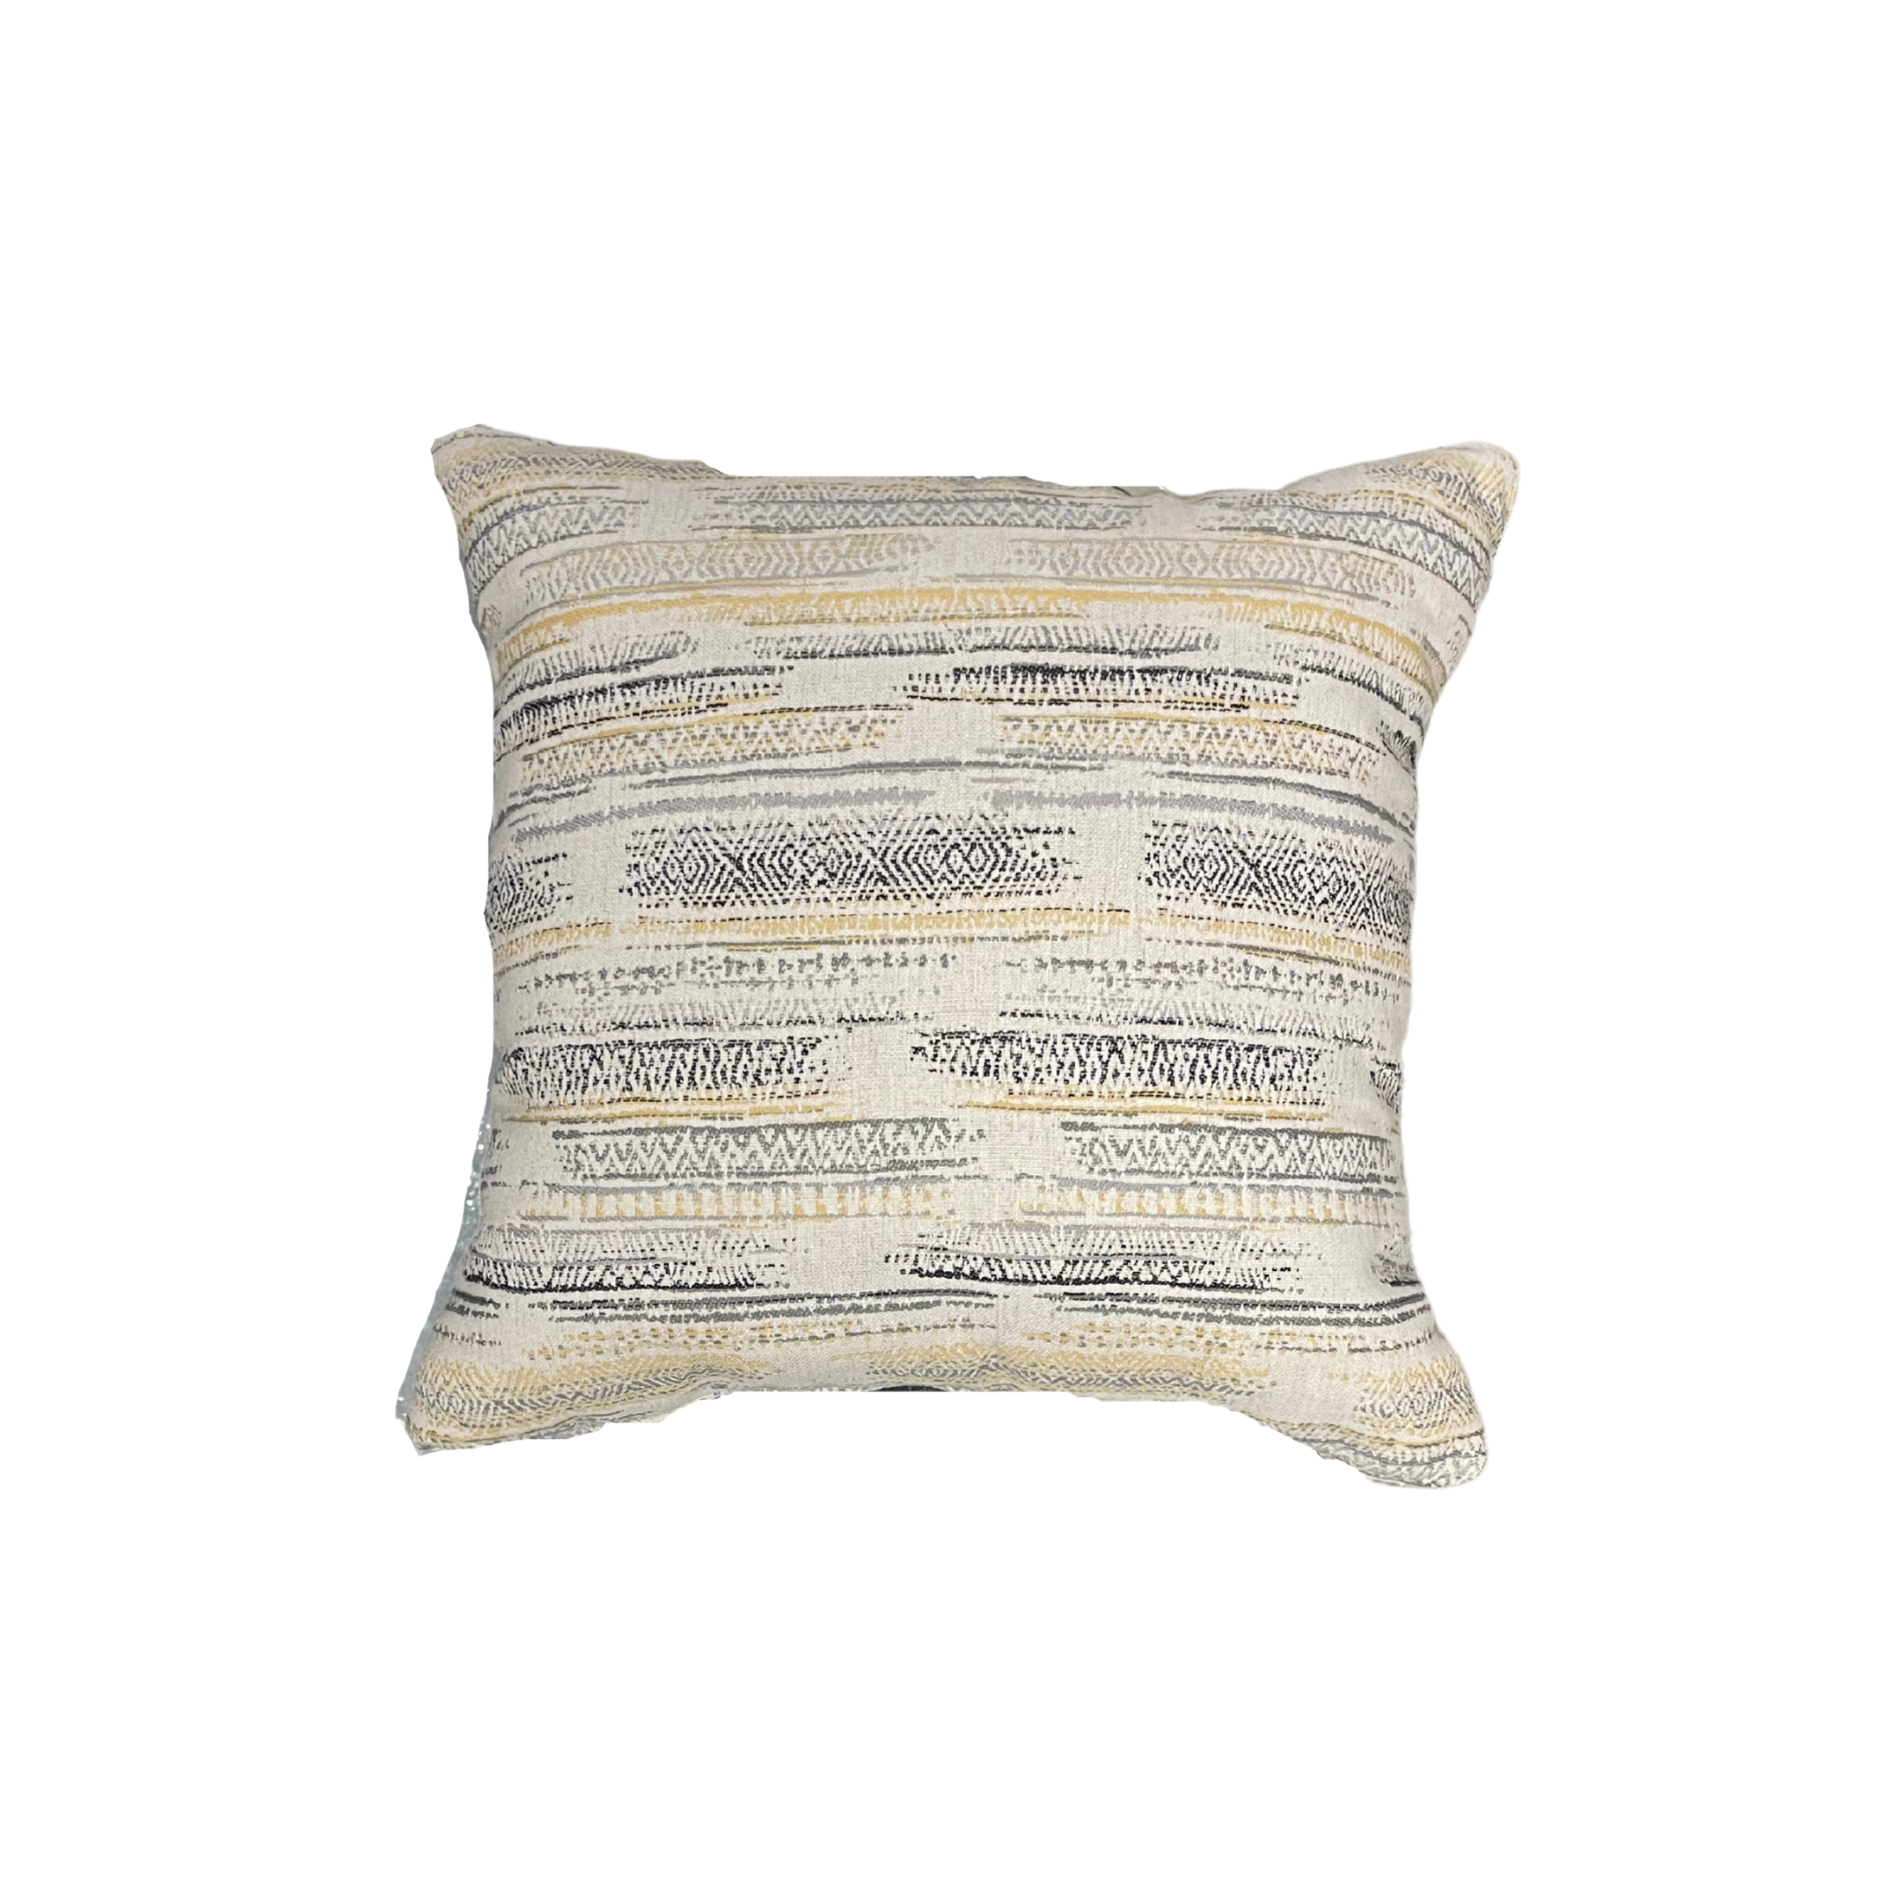 Neutral Pattern 18” x 18” Toss Pillows (Set of 2)